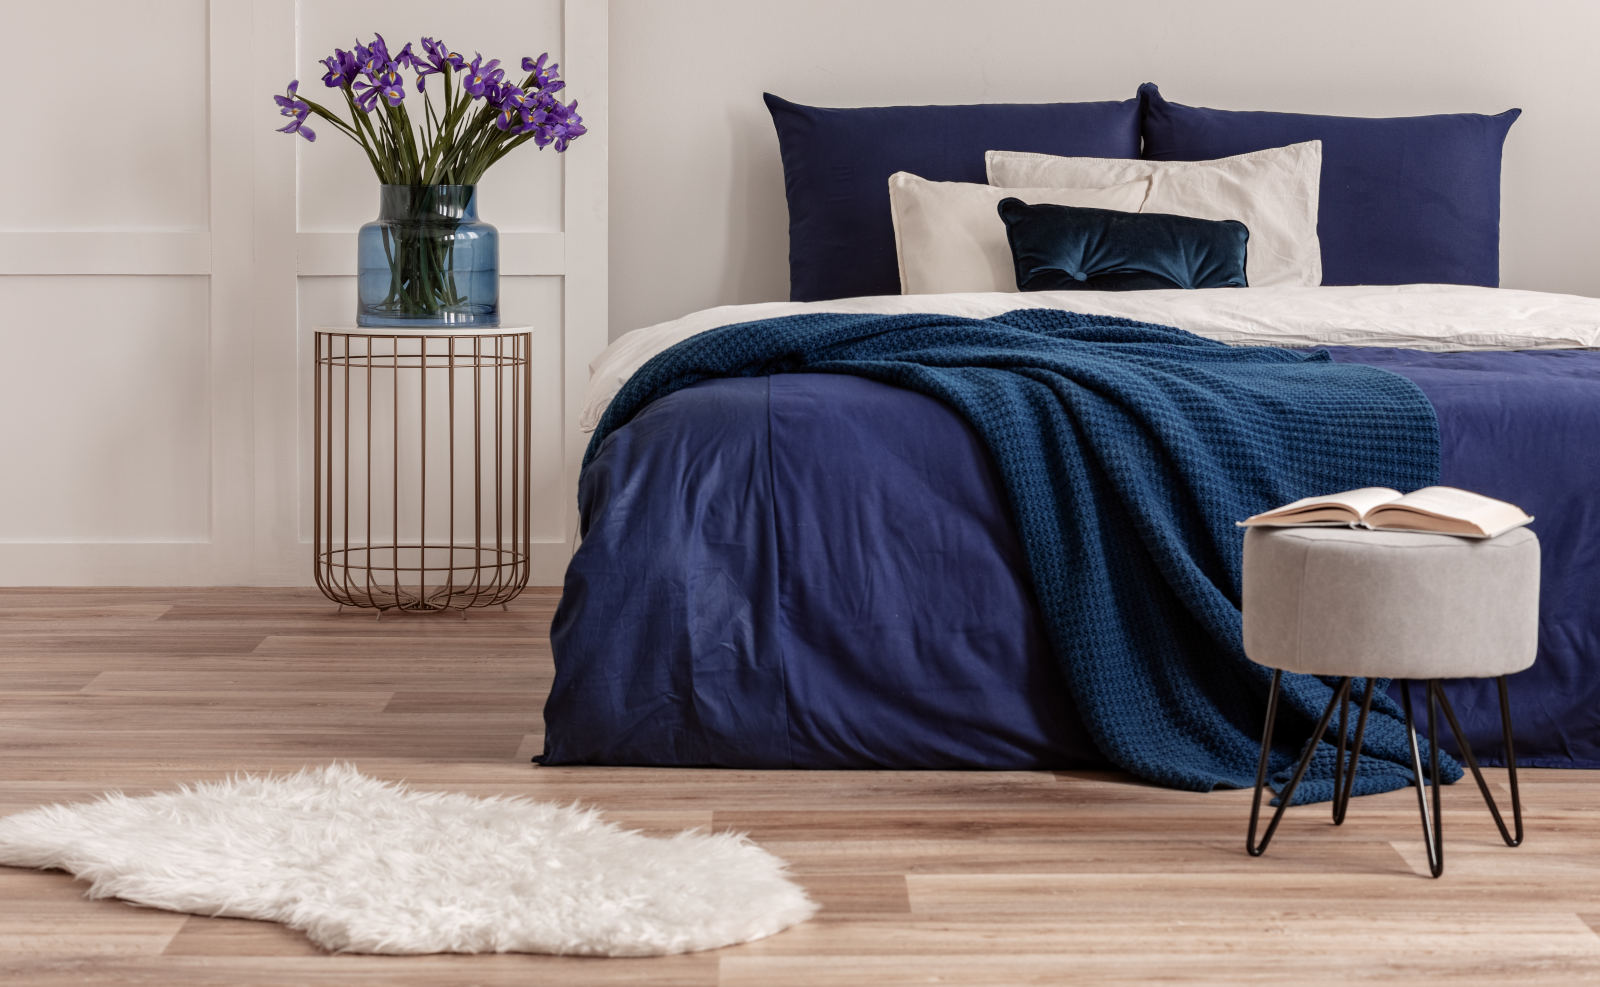 Kárpitozott ágy, szövetágy – stílusos elegancia a hálóban